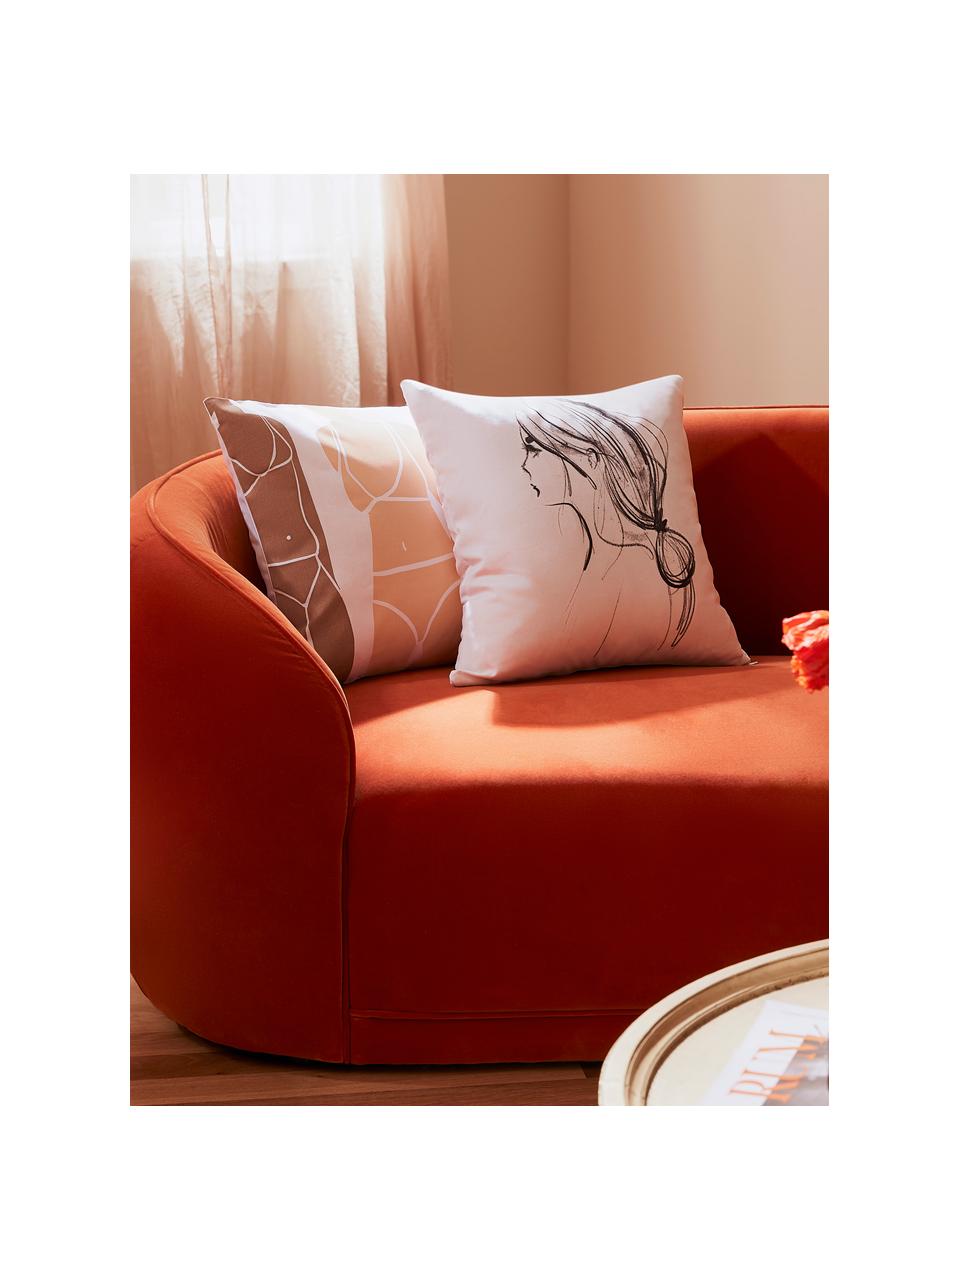 Poszewka na poduszkę Ponytail od Kery Till, 100% bawełna, Biały, czarny, S 40 x D 40 cm